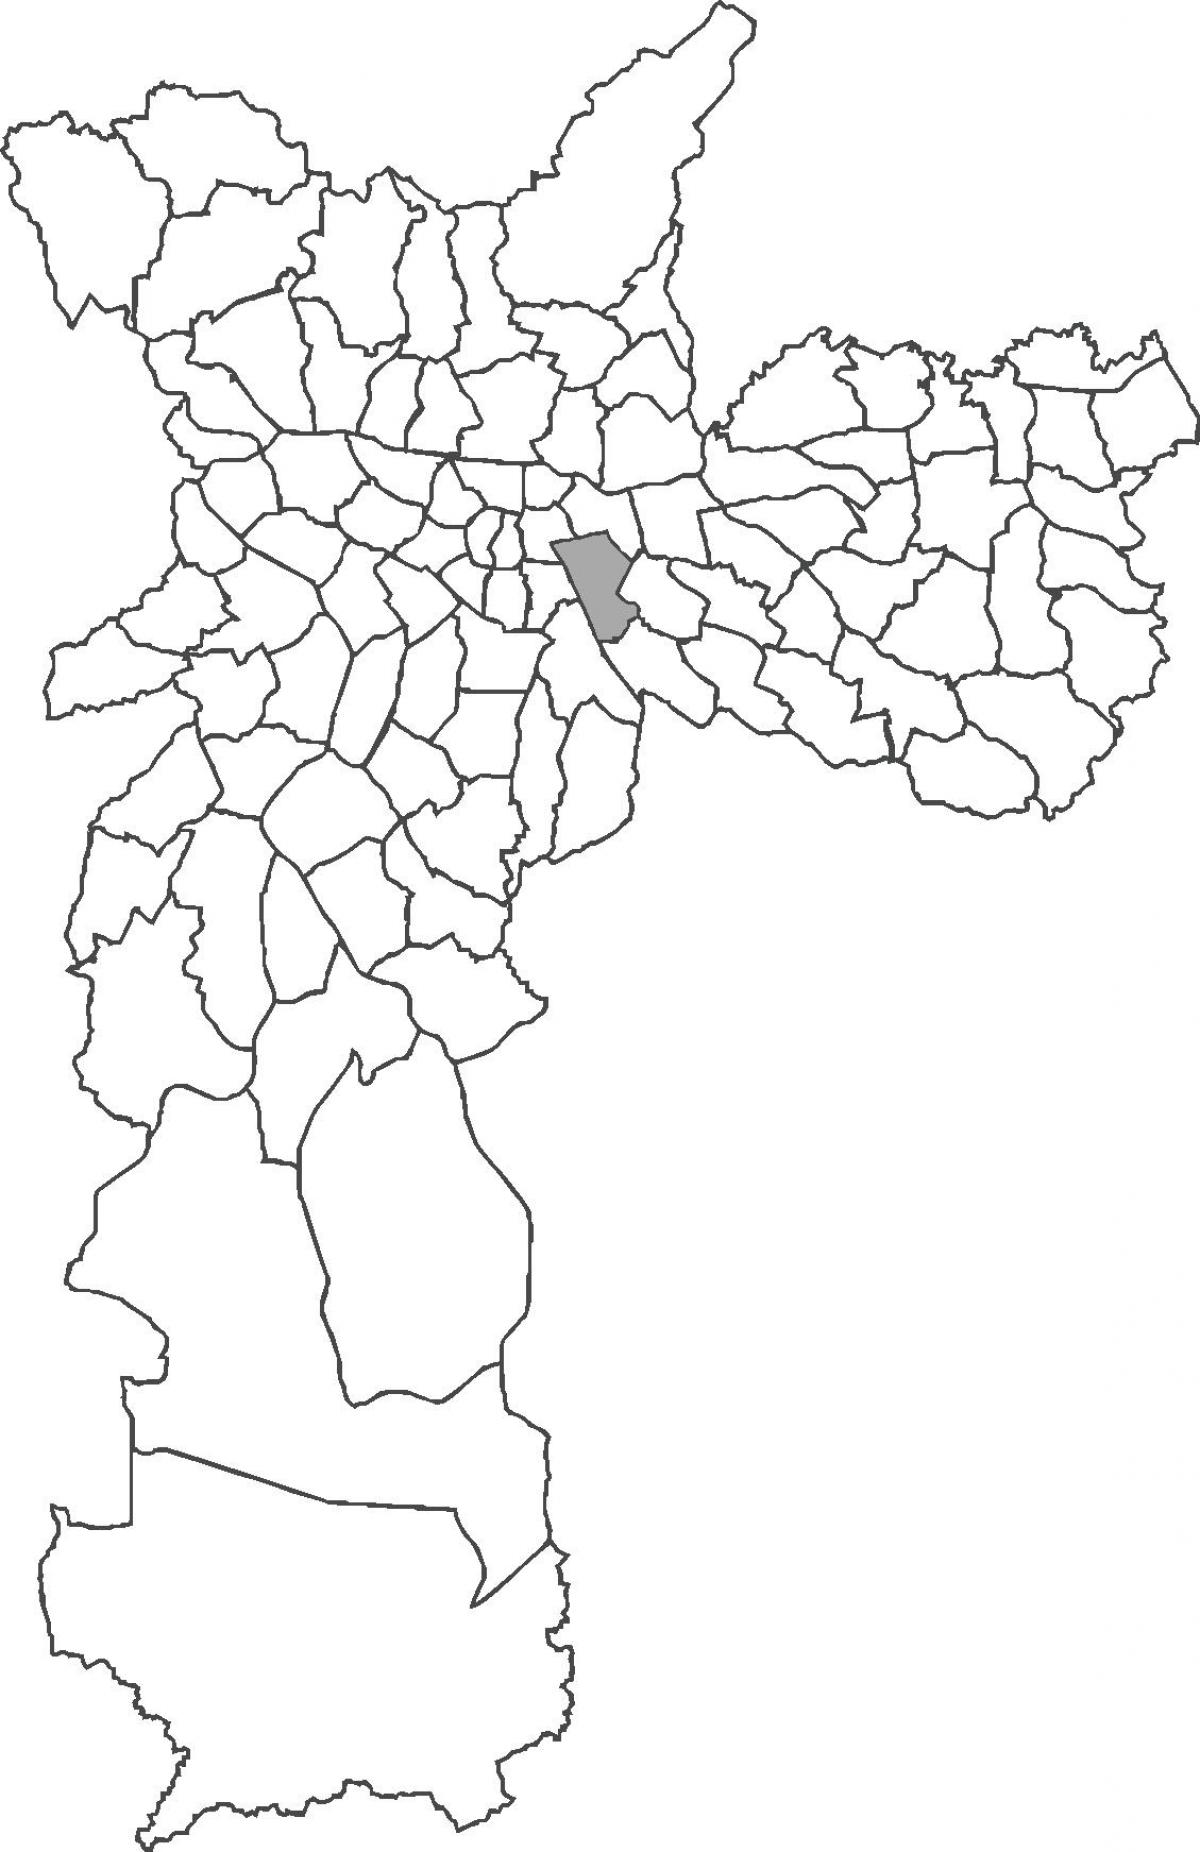 地図Mooca地区